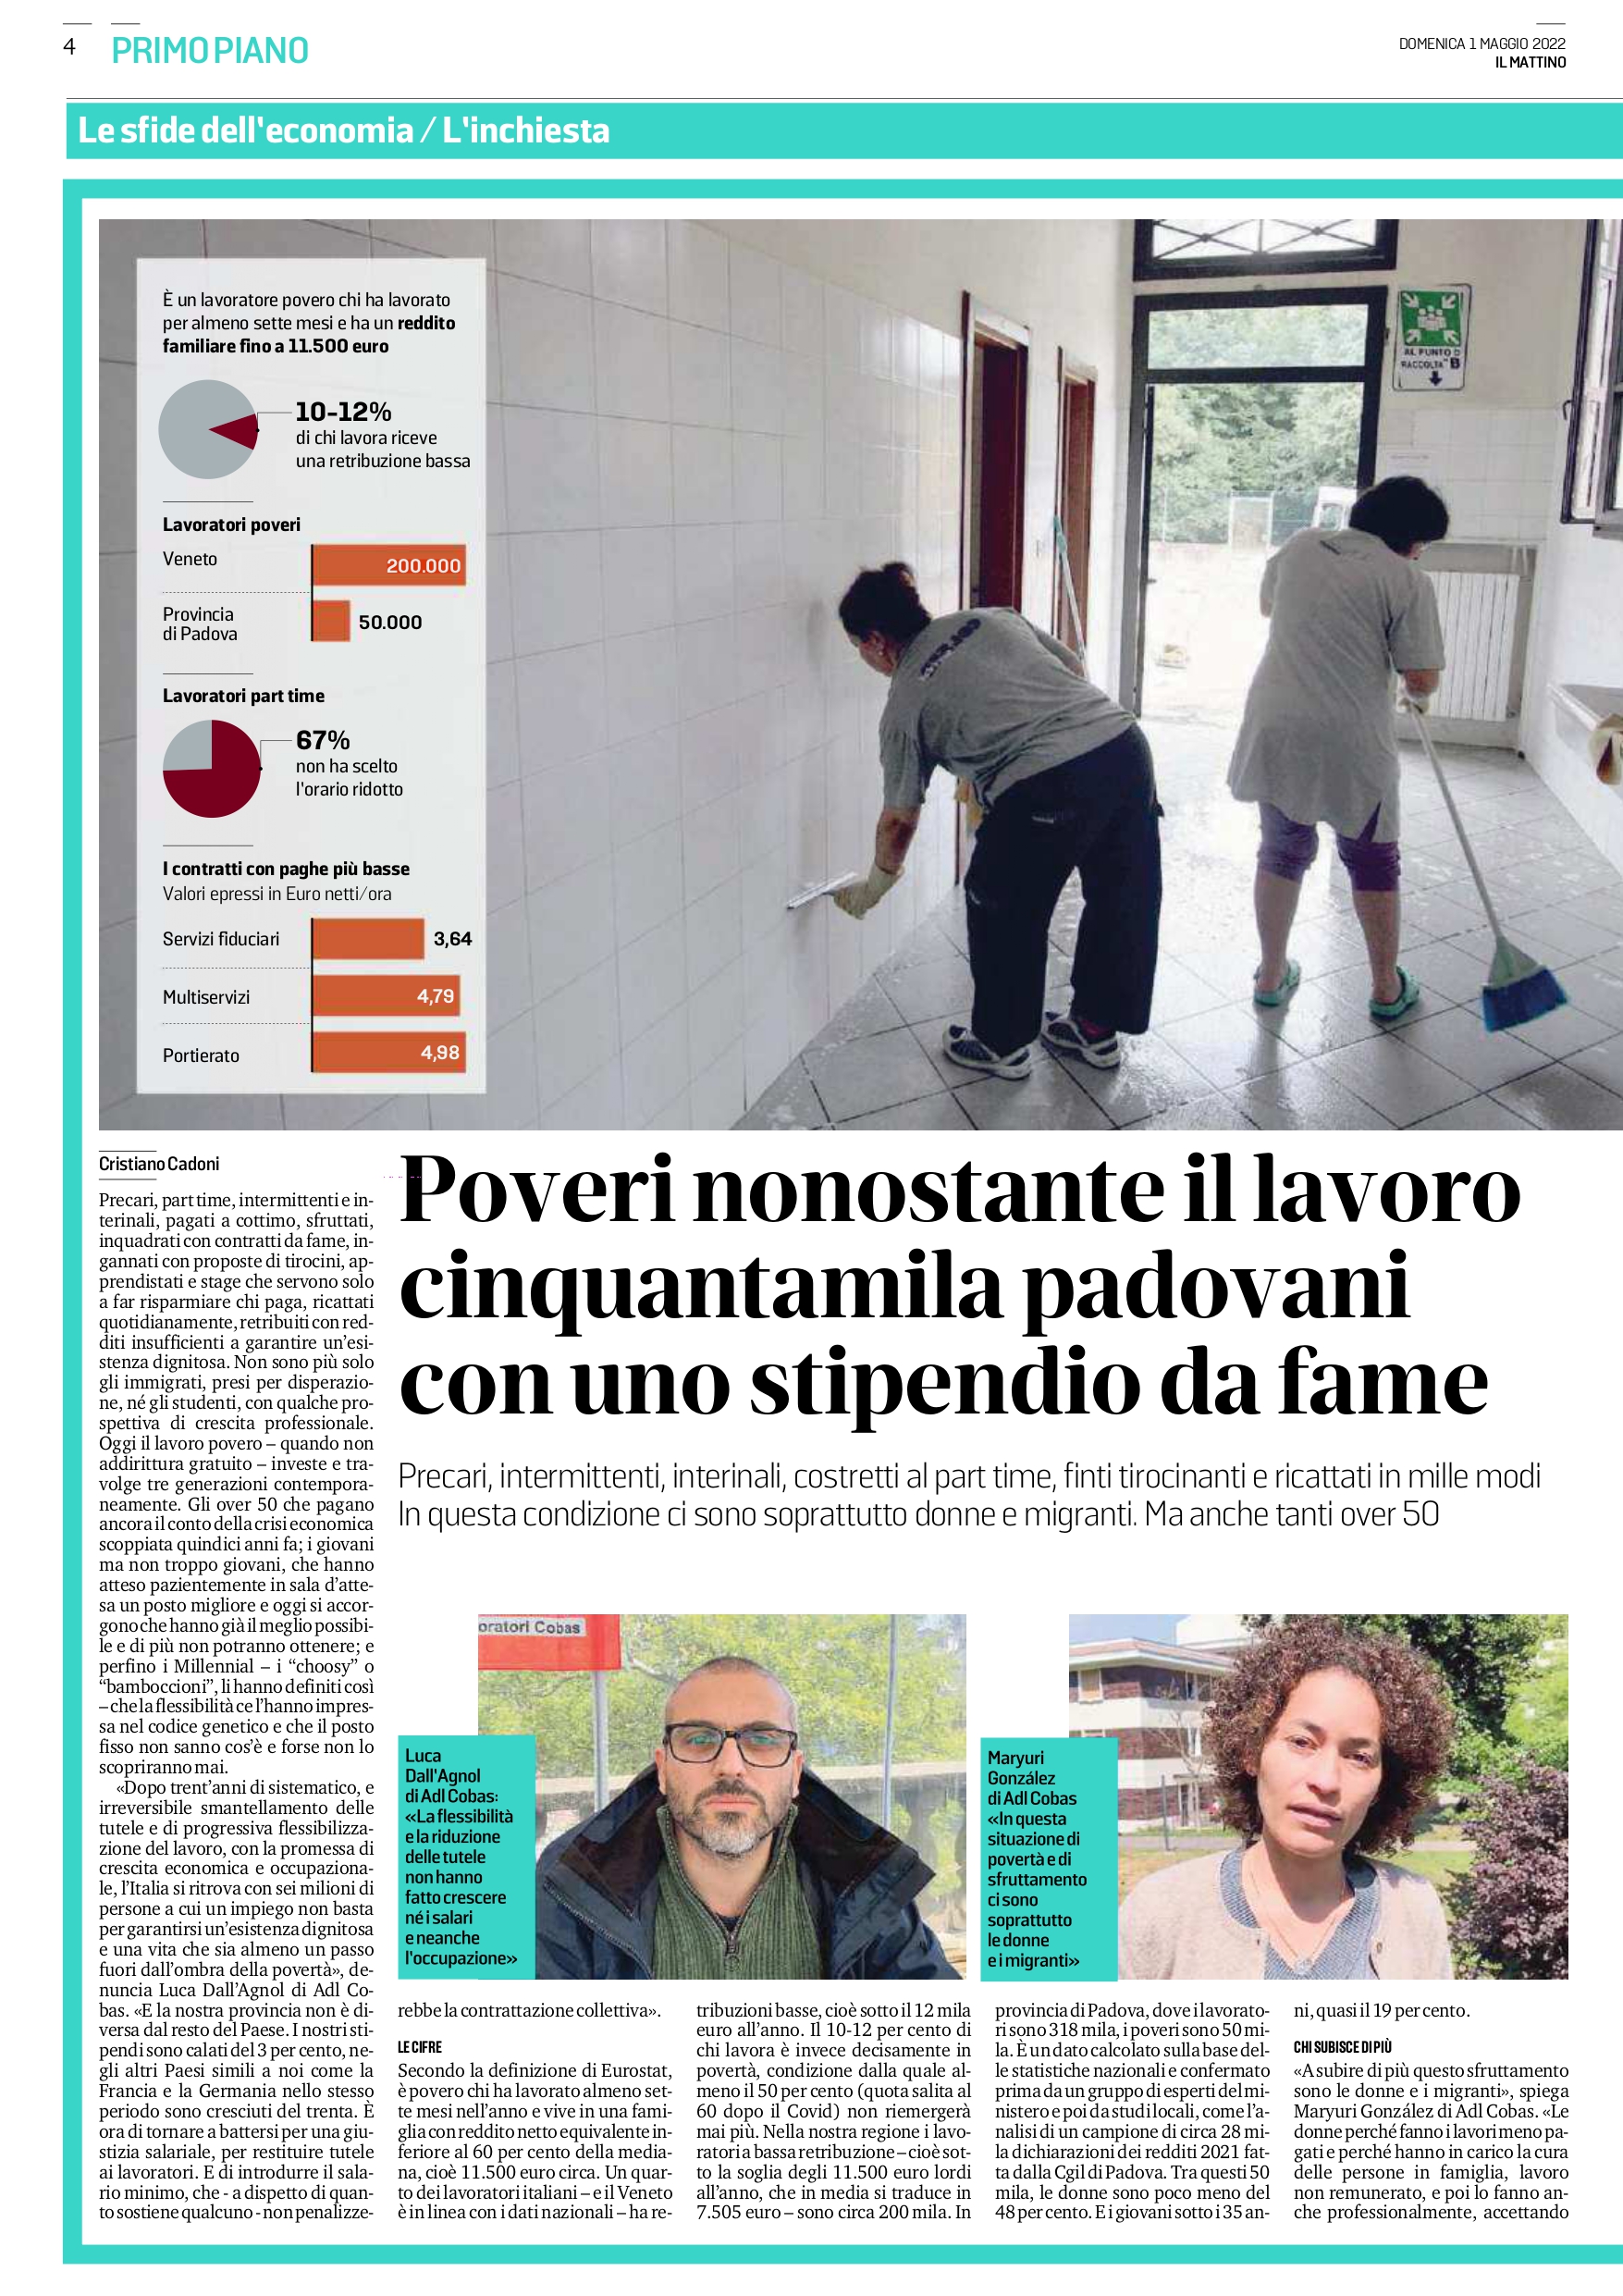 Sindacato di Base ADL Cobas - Povero Lavoro. L'inchiesta de Il Mattino di Padova sui salari da fame